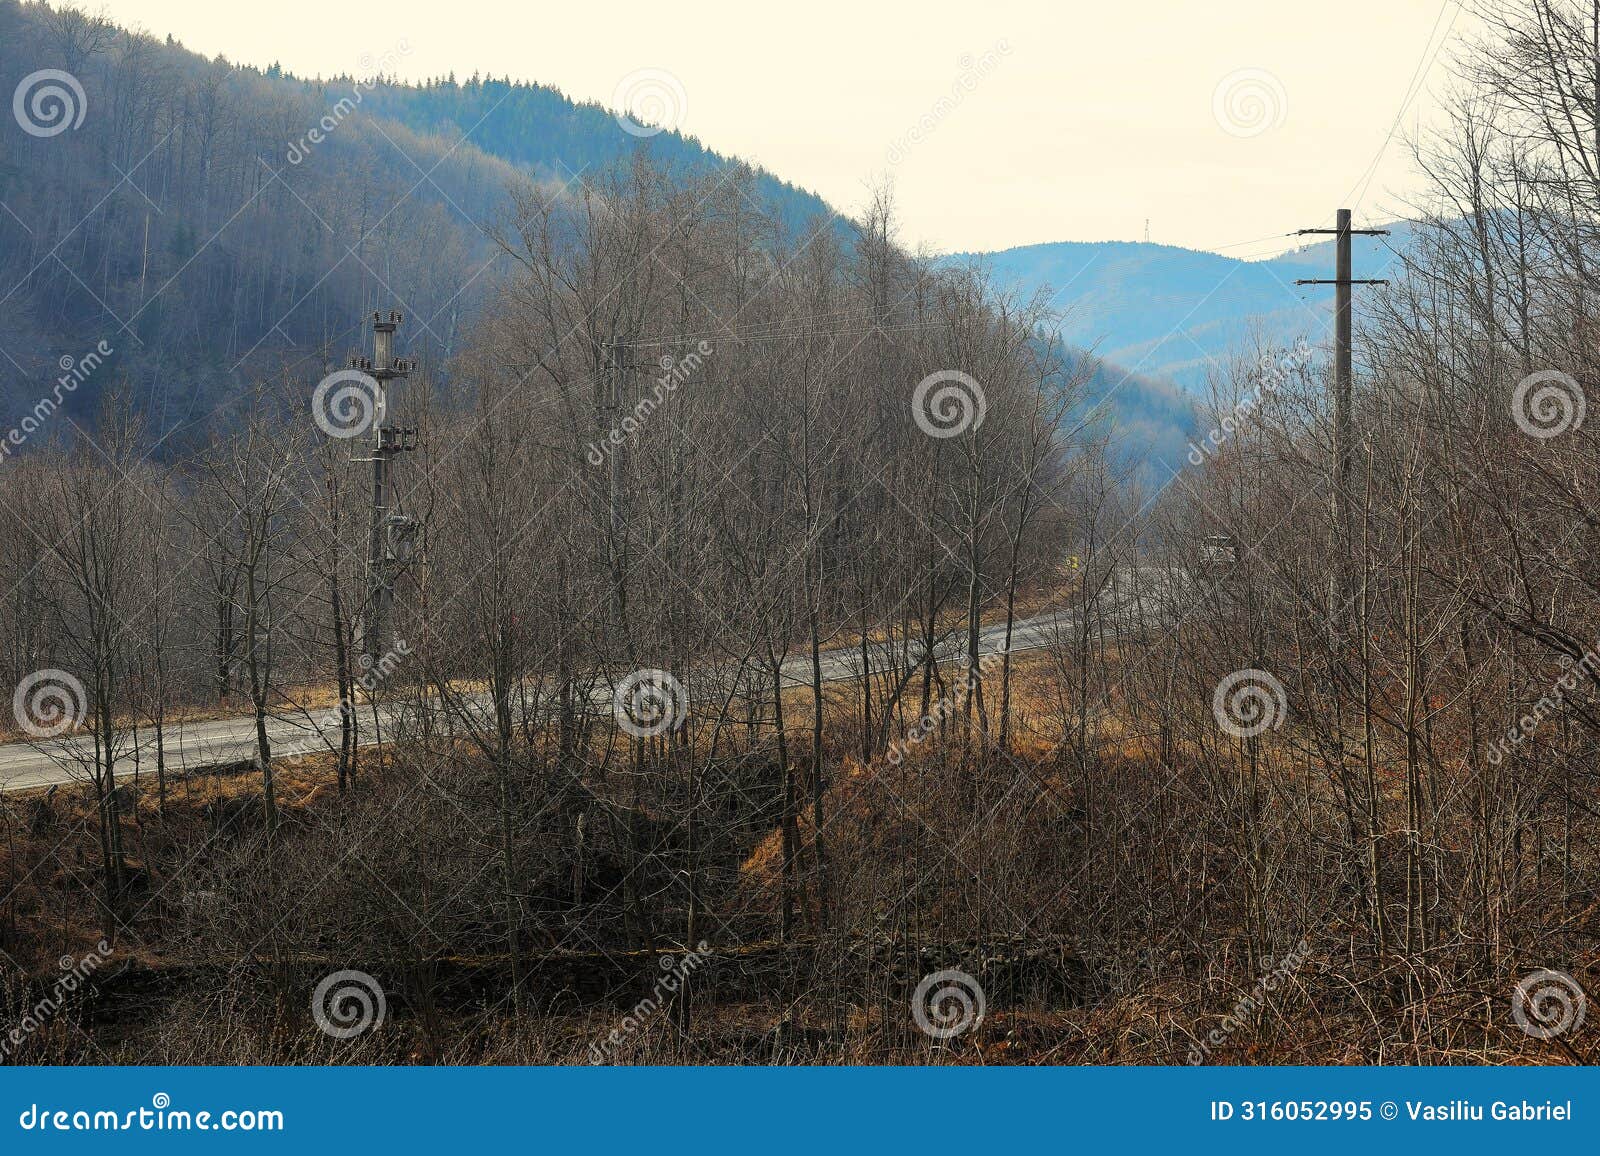 mountain landscape, near the suzana monastery, prahova county